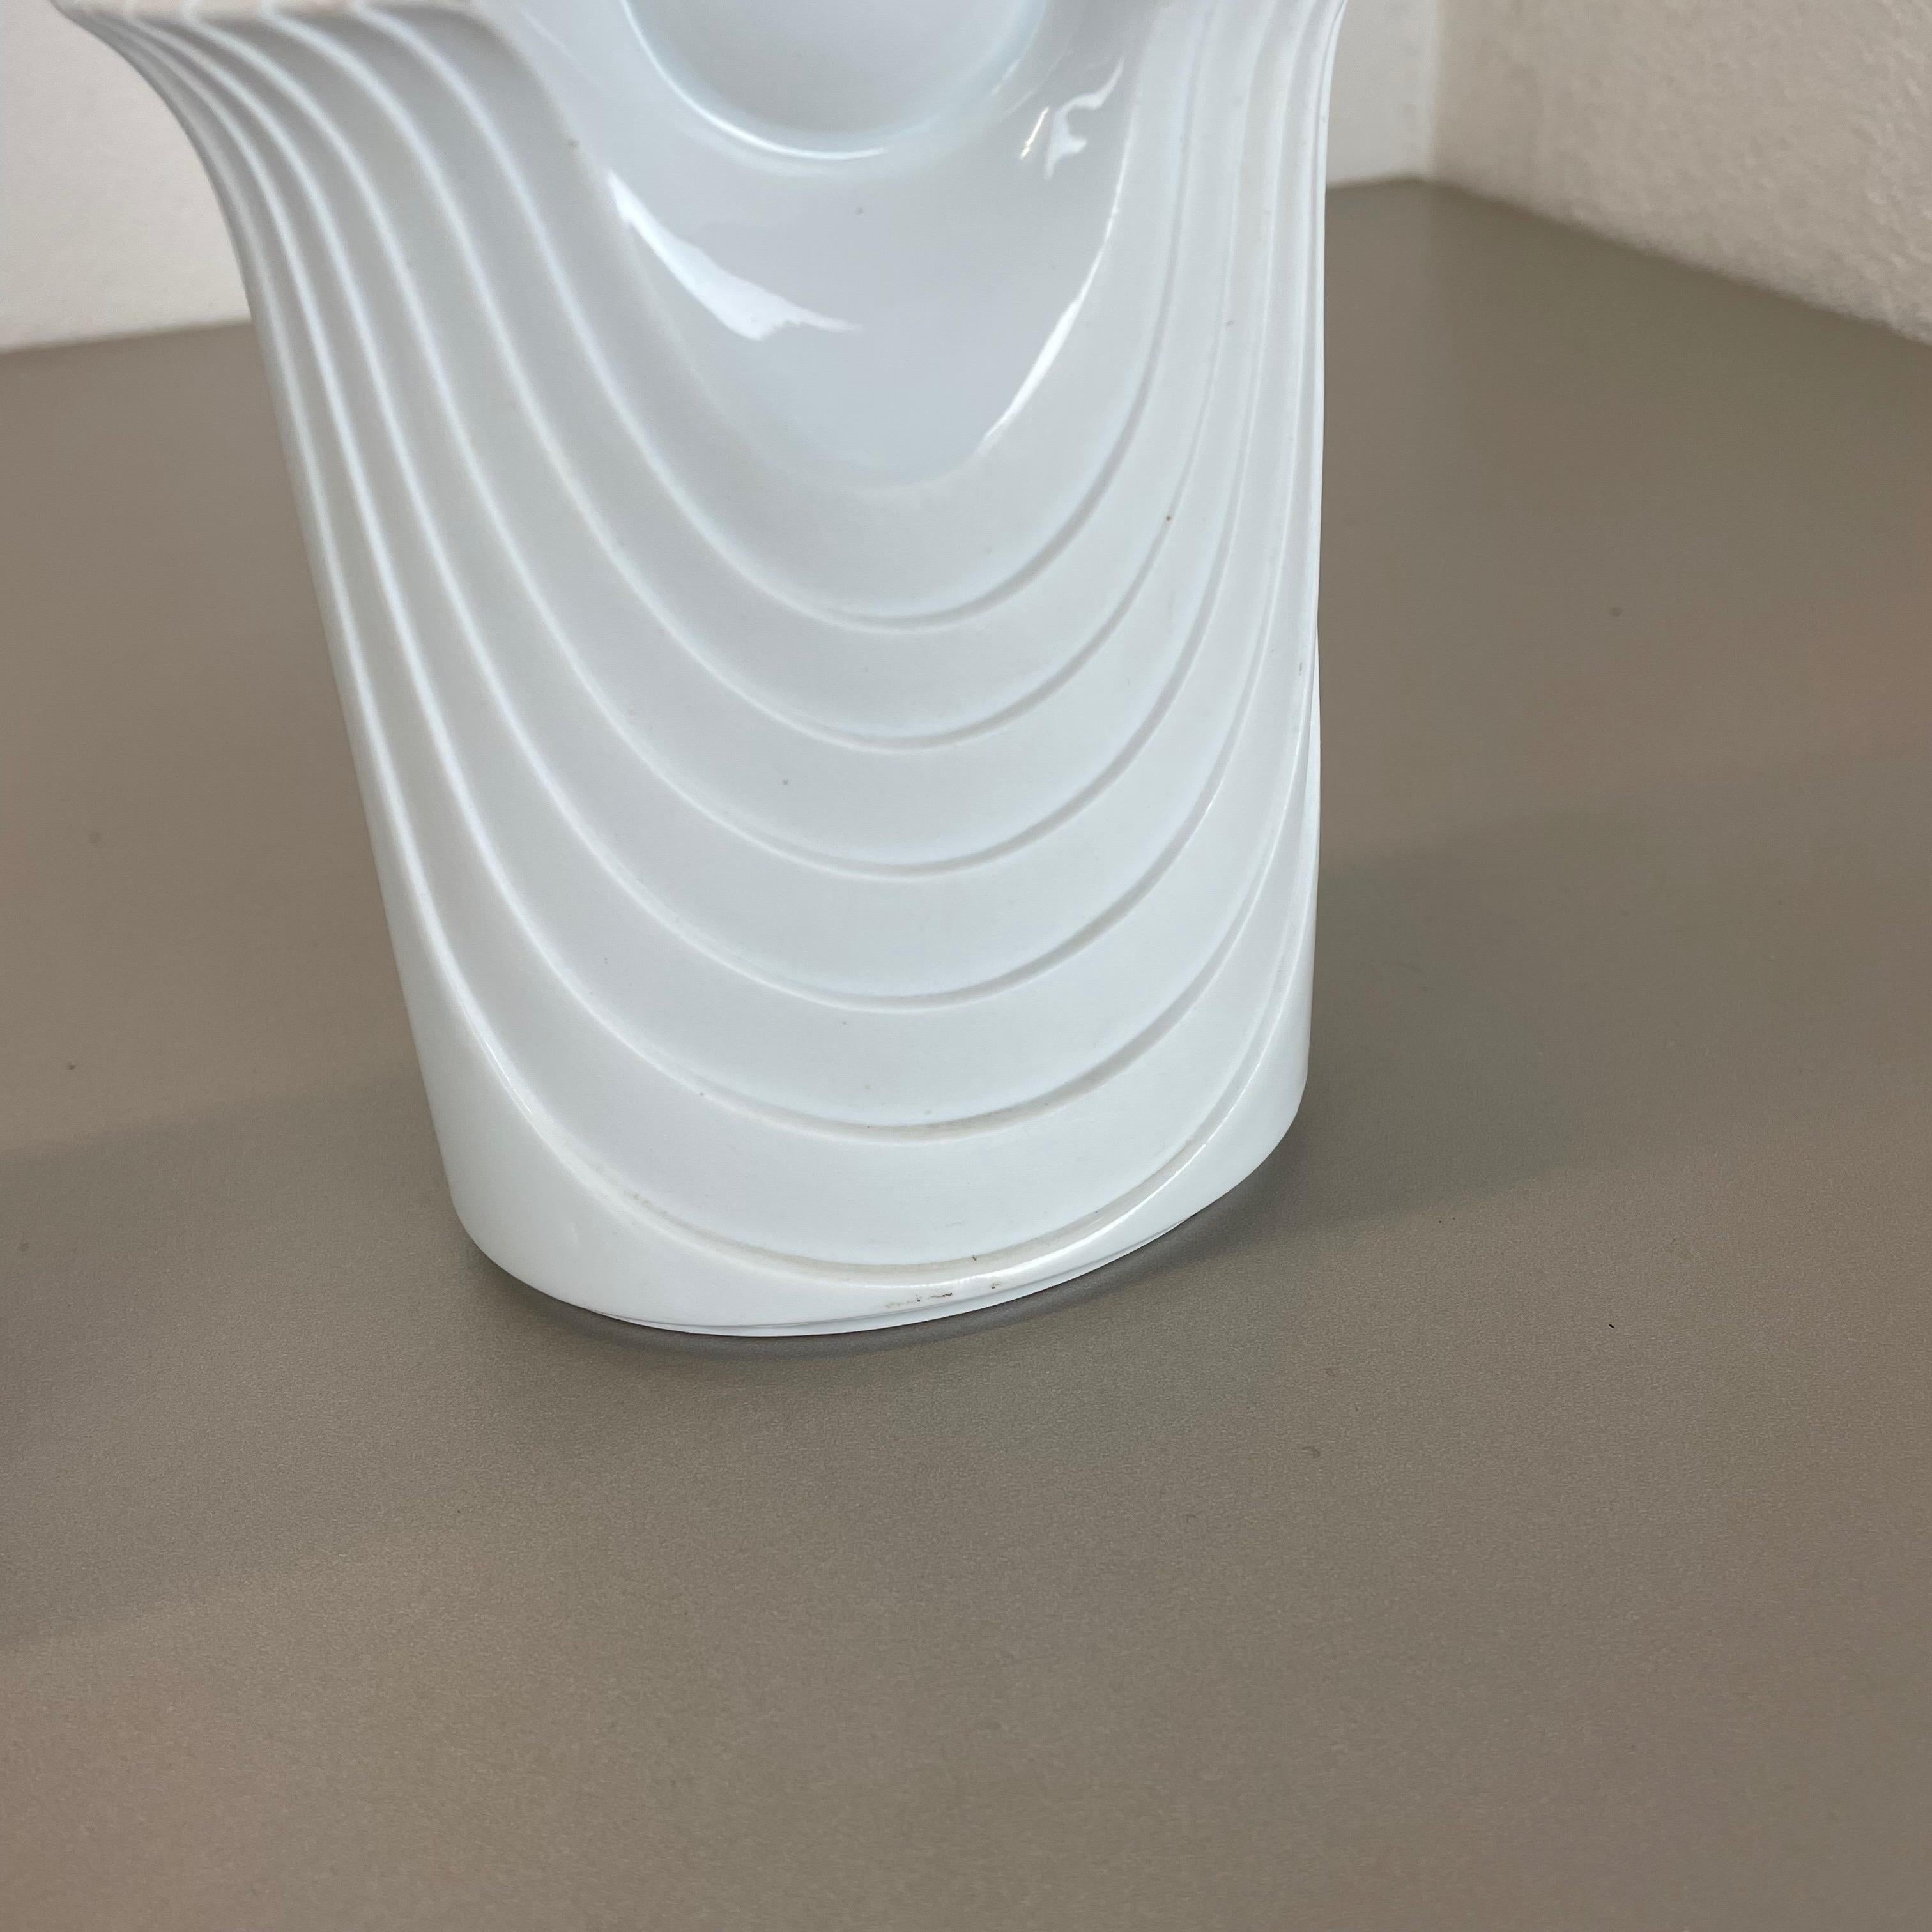 Set of 2 Original Porcelain OP Art Vase Made by Royal Bavaria KPM Germany, 1970s For Sale 3